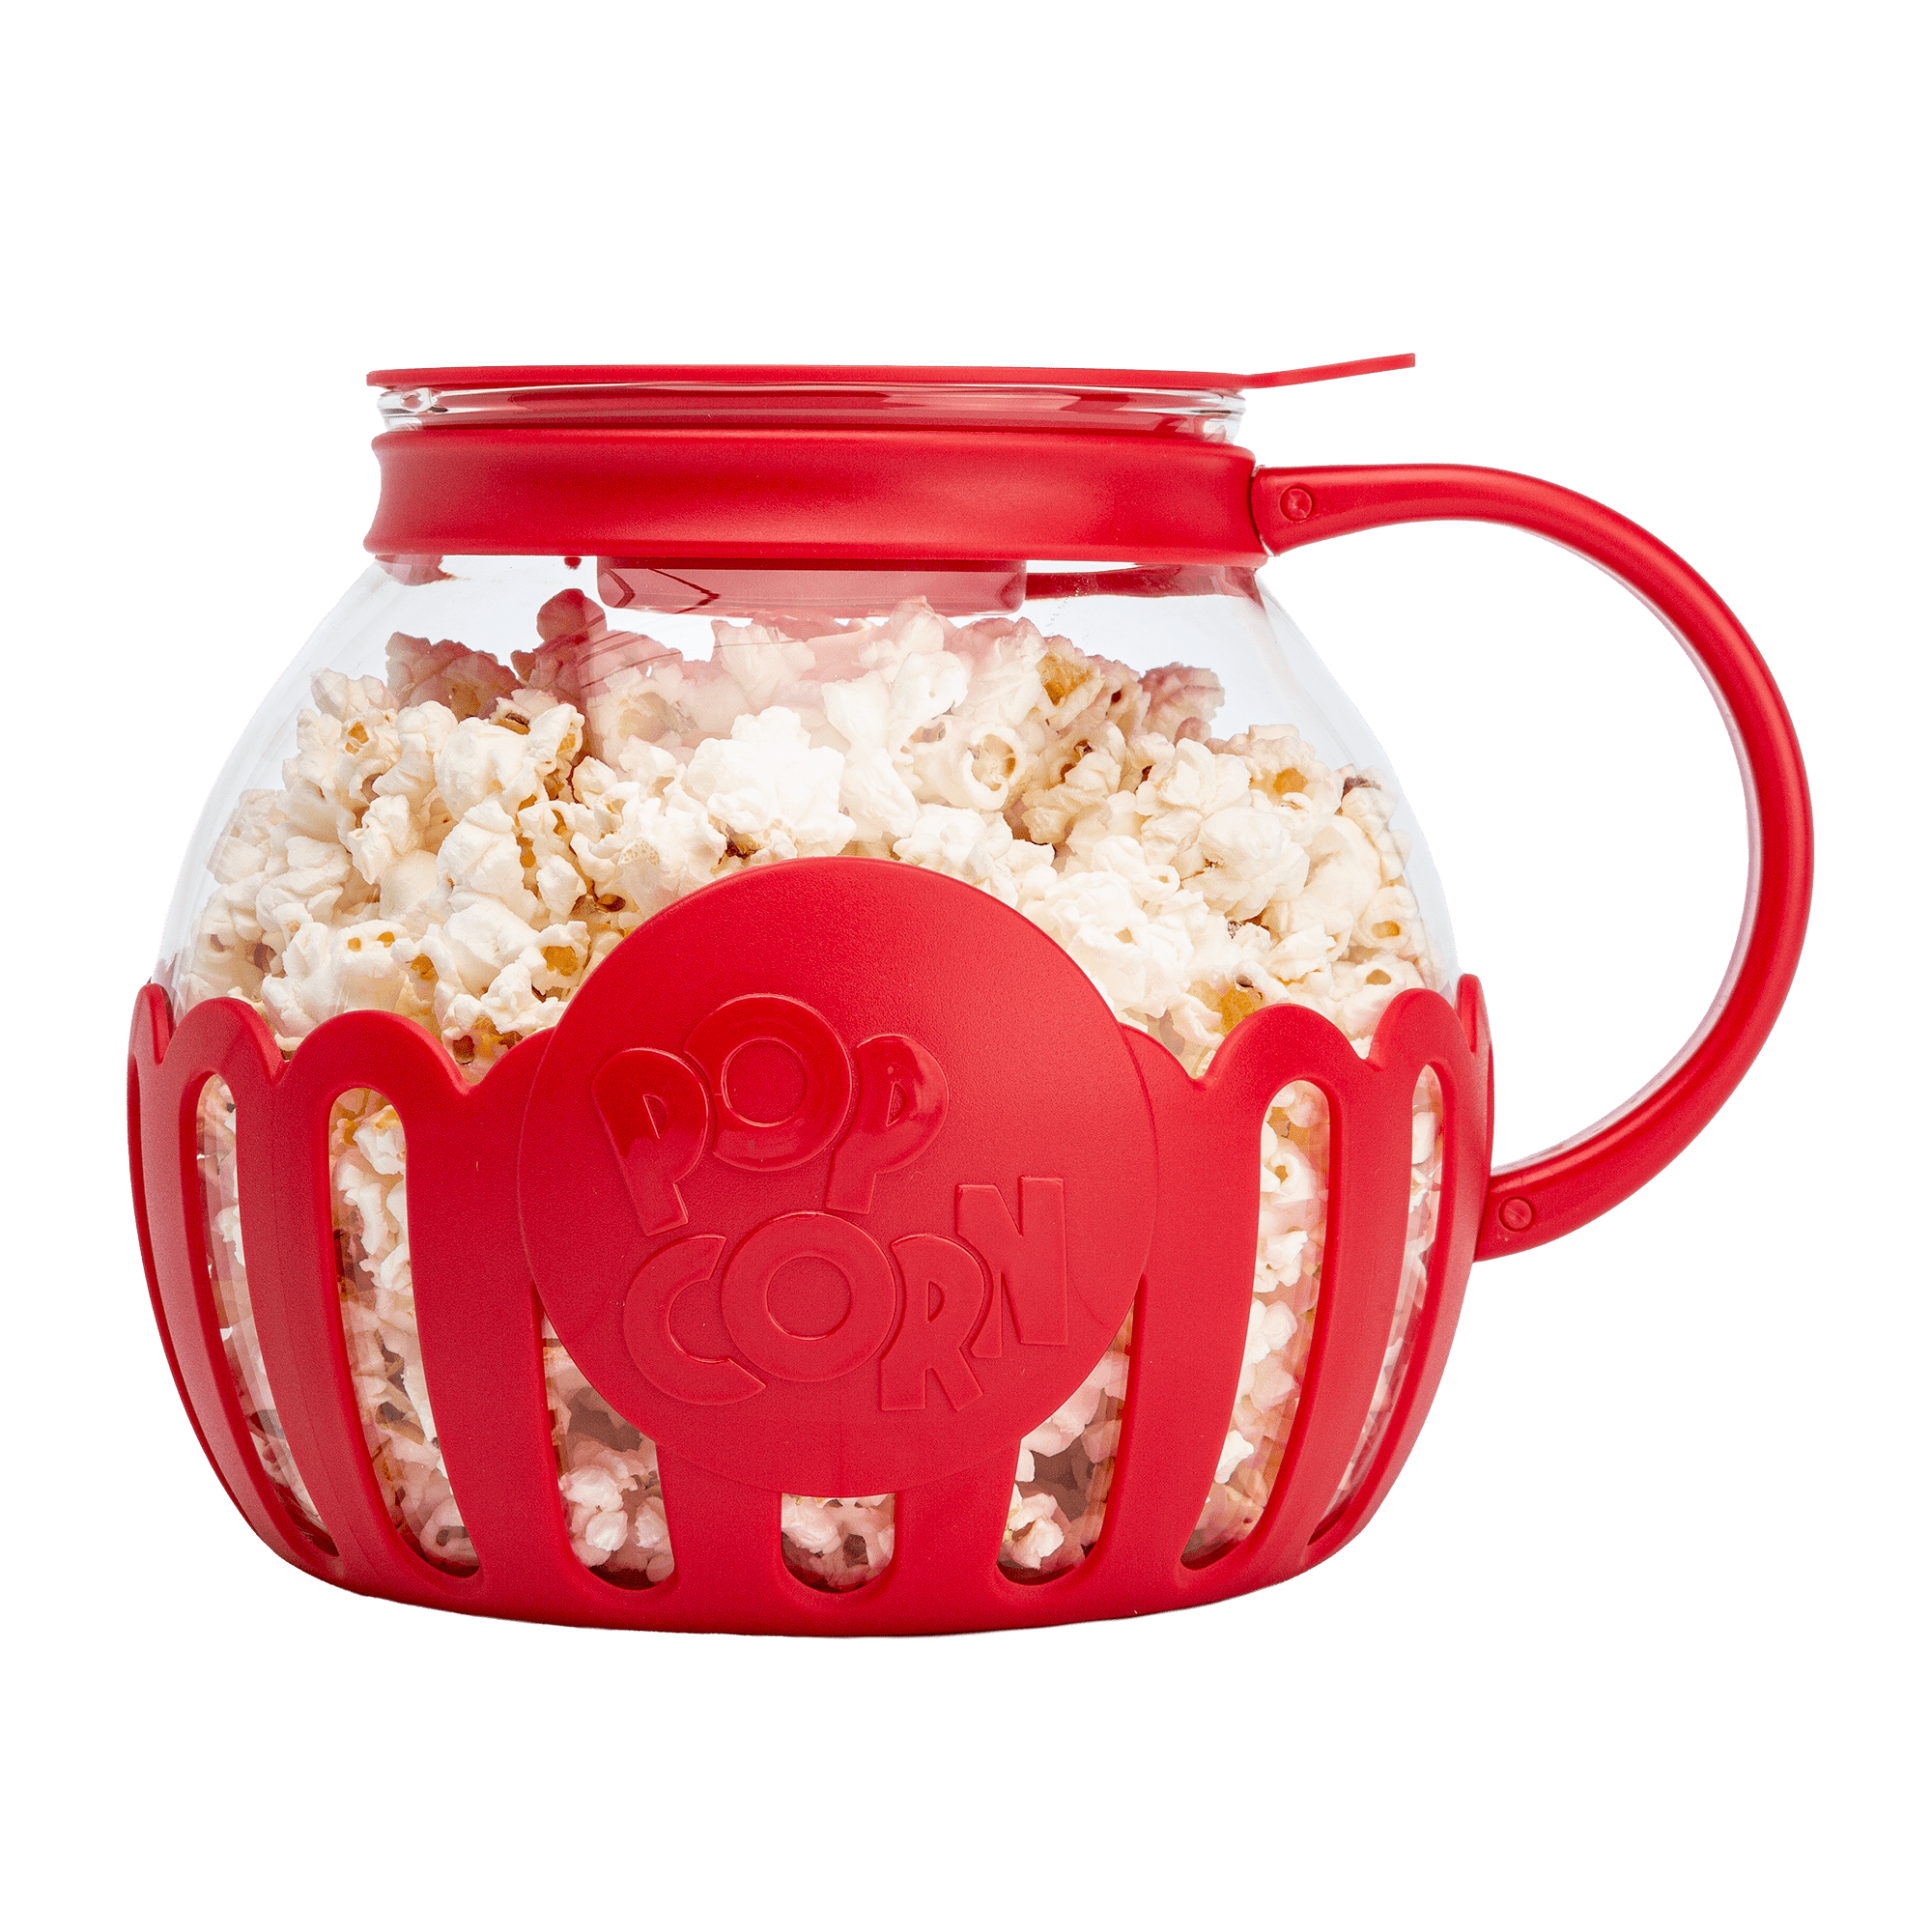 Chollo Pack Lékué XL! Palomitero Popcorn Maker + 4 boles por 16.99